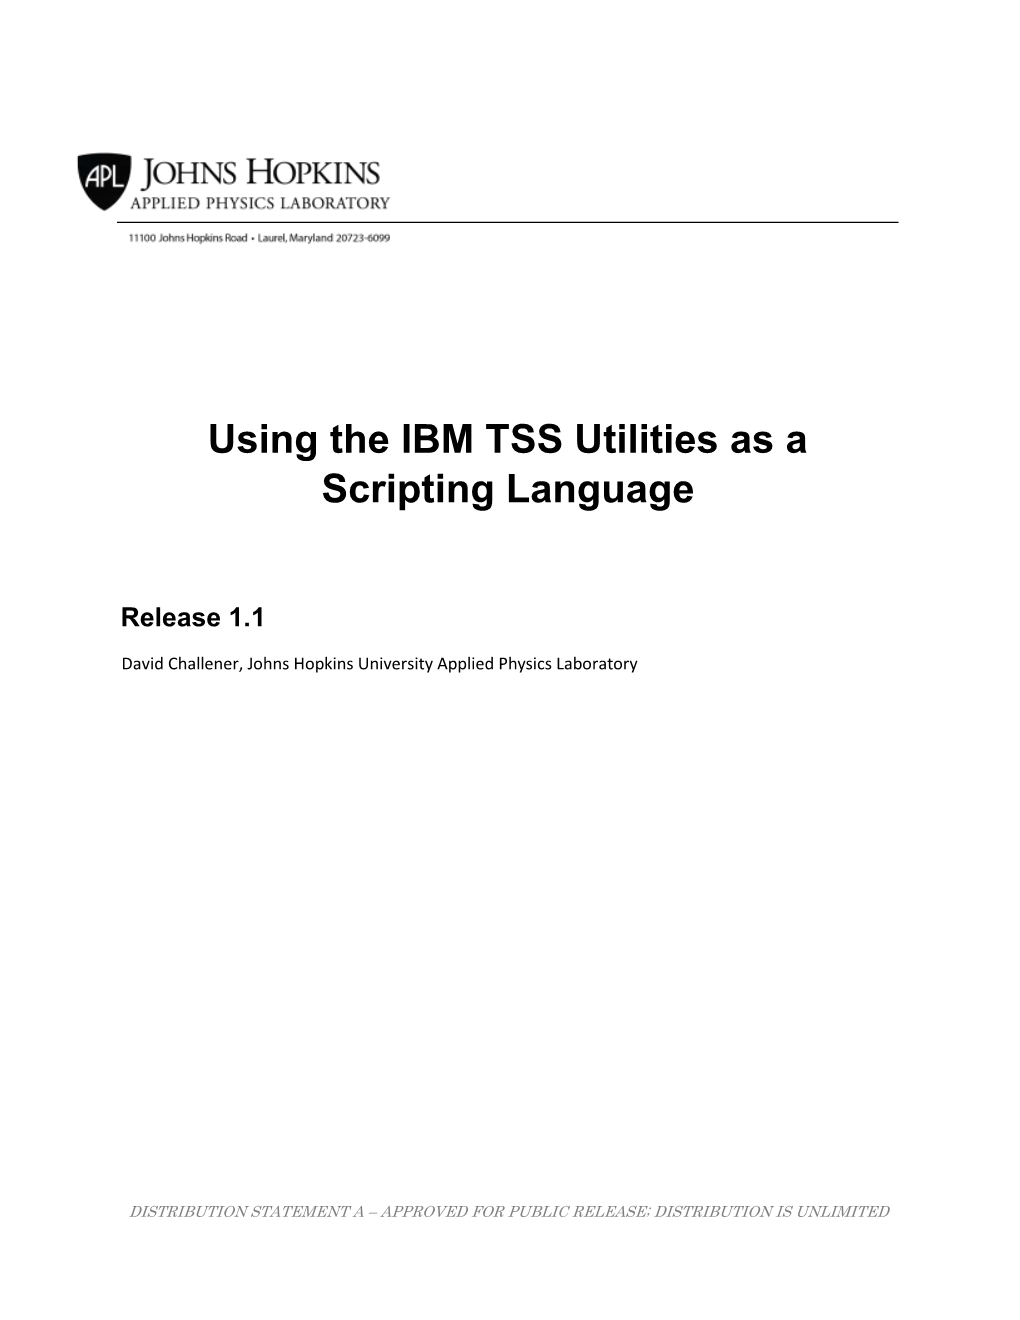 Using the IBM TSS Utilities As a Scripting Language 1